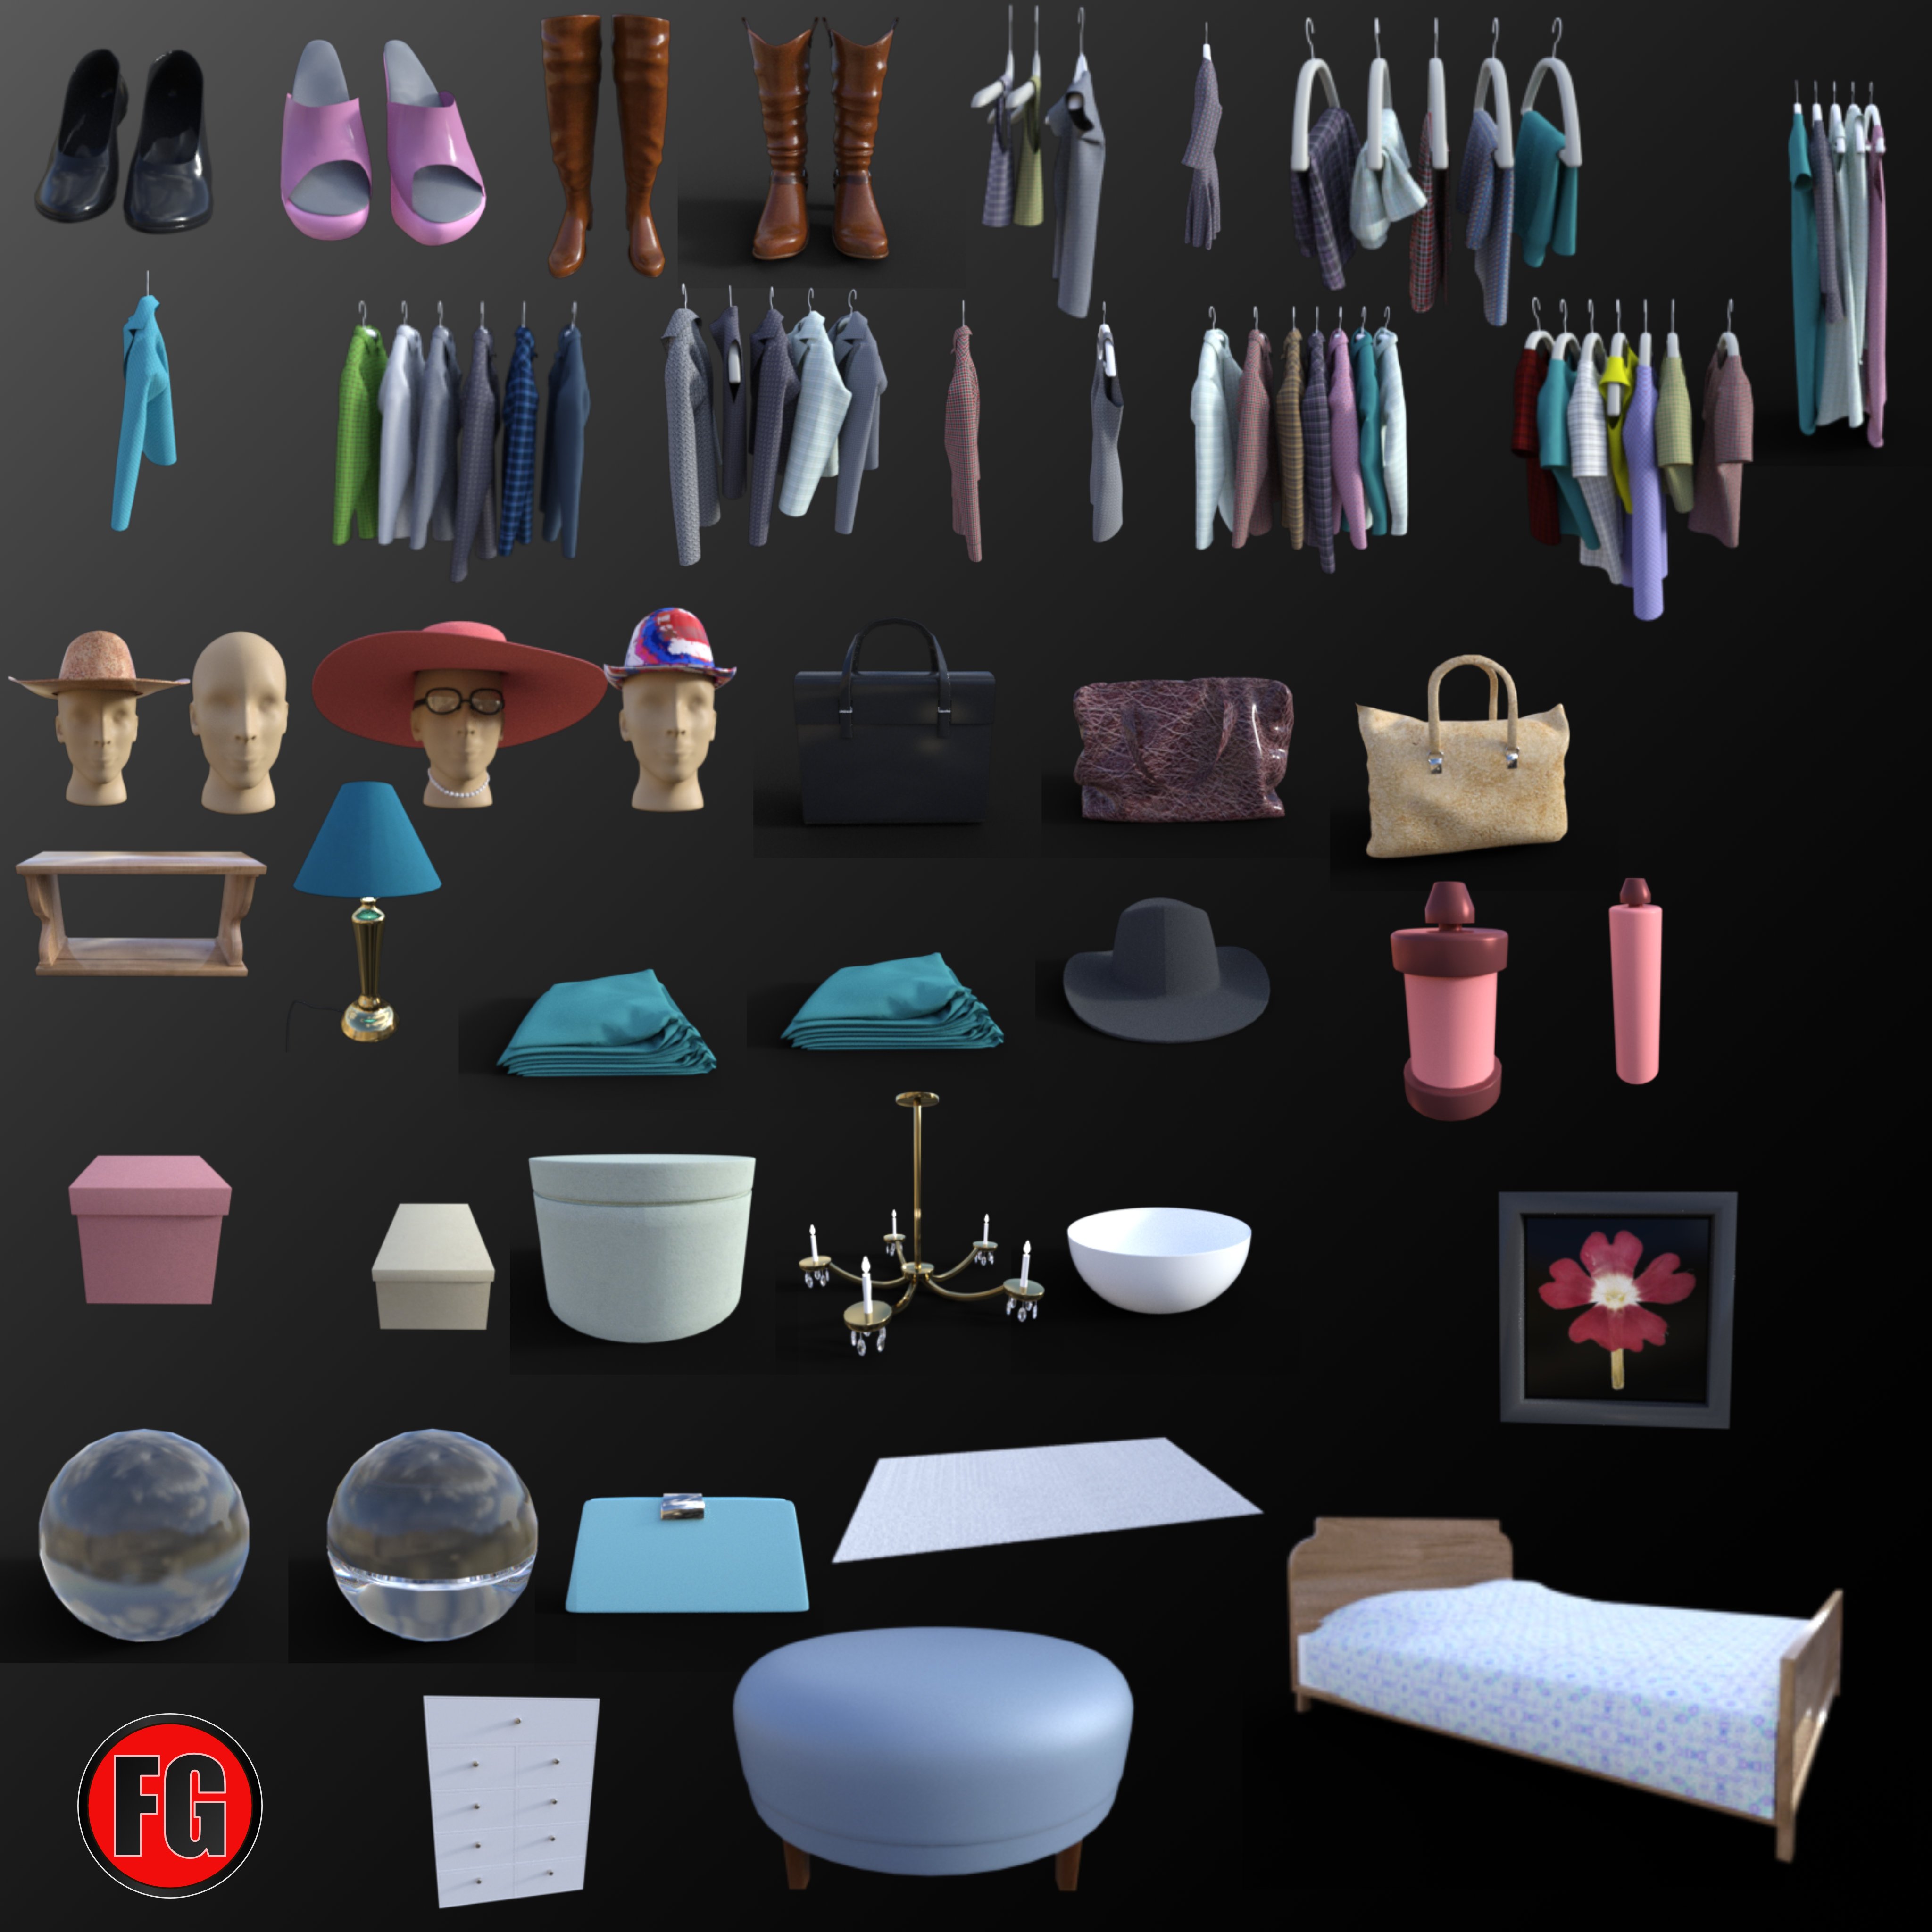 FG Closet by: Fugazi1968, 3D Models by Daz 3D